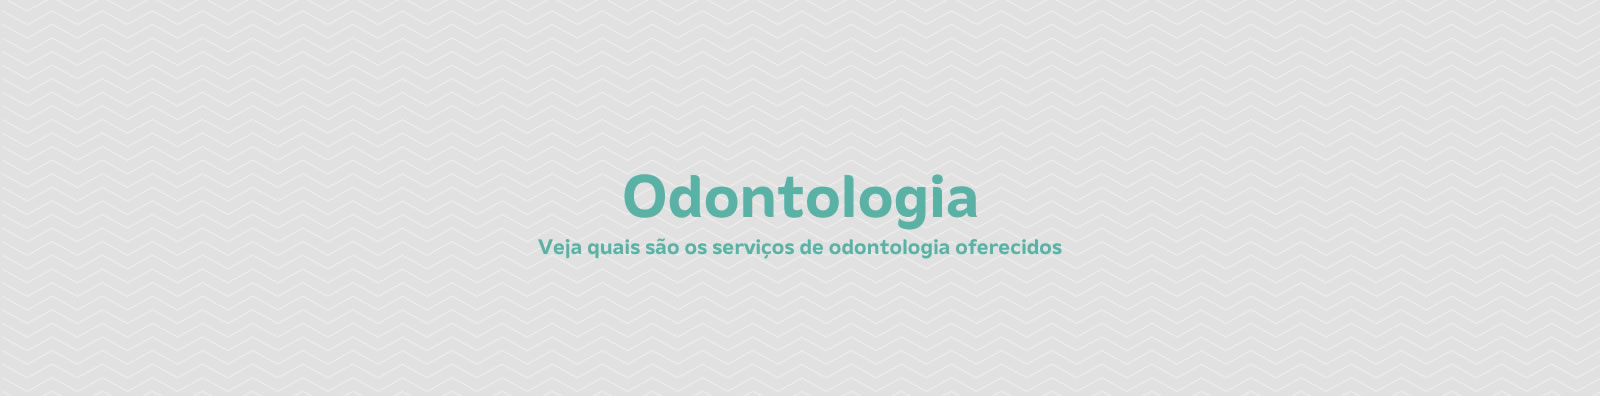 Banner da Página de Odontologia